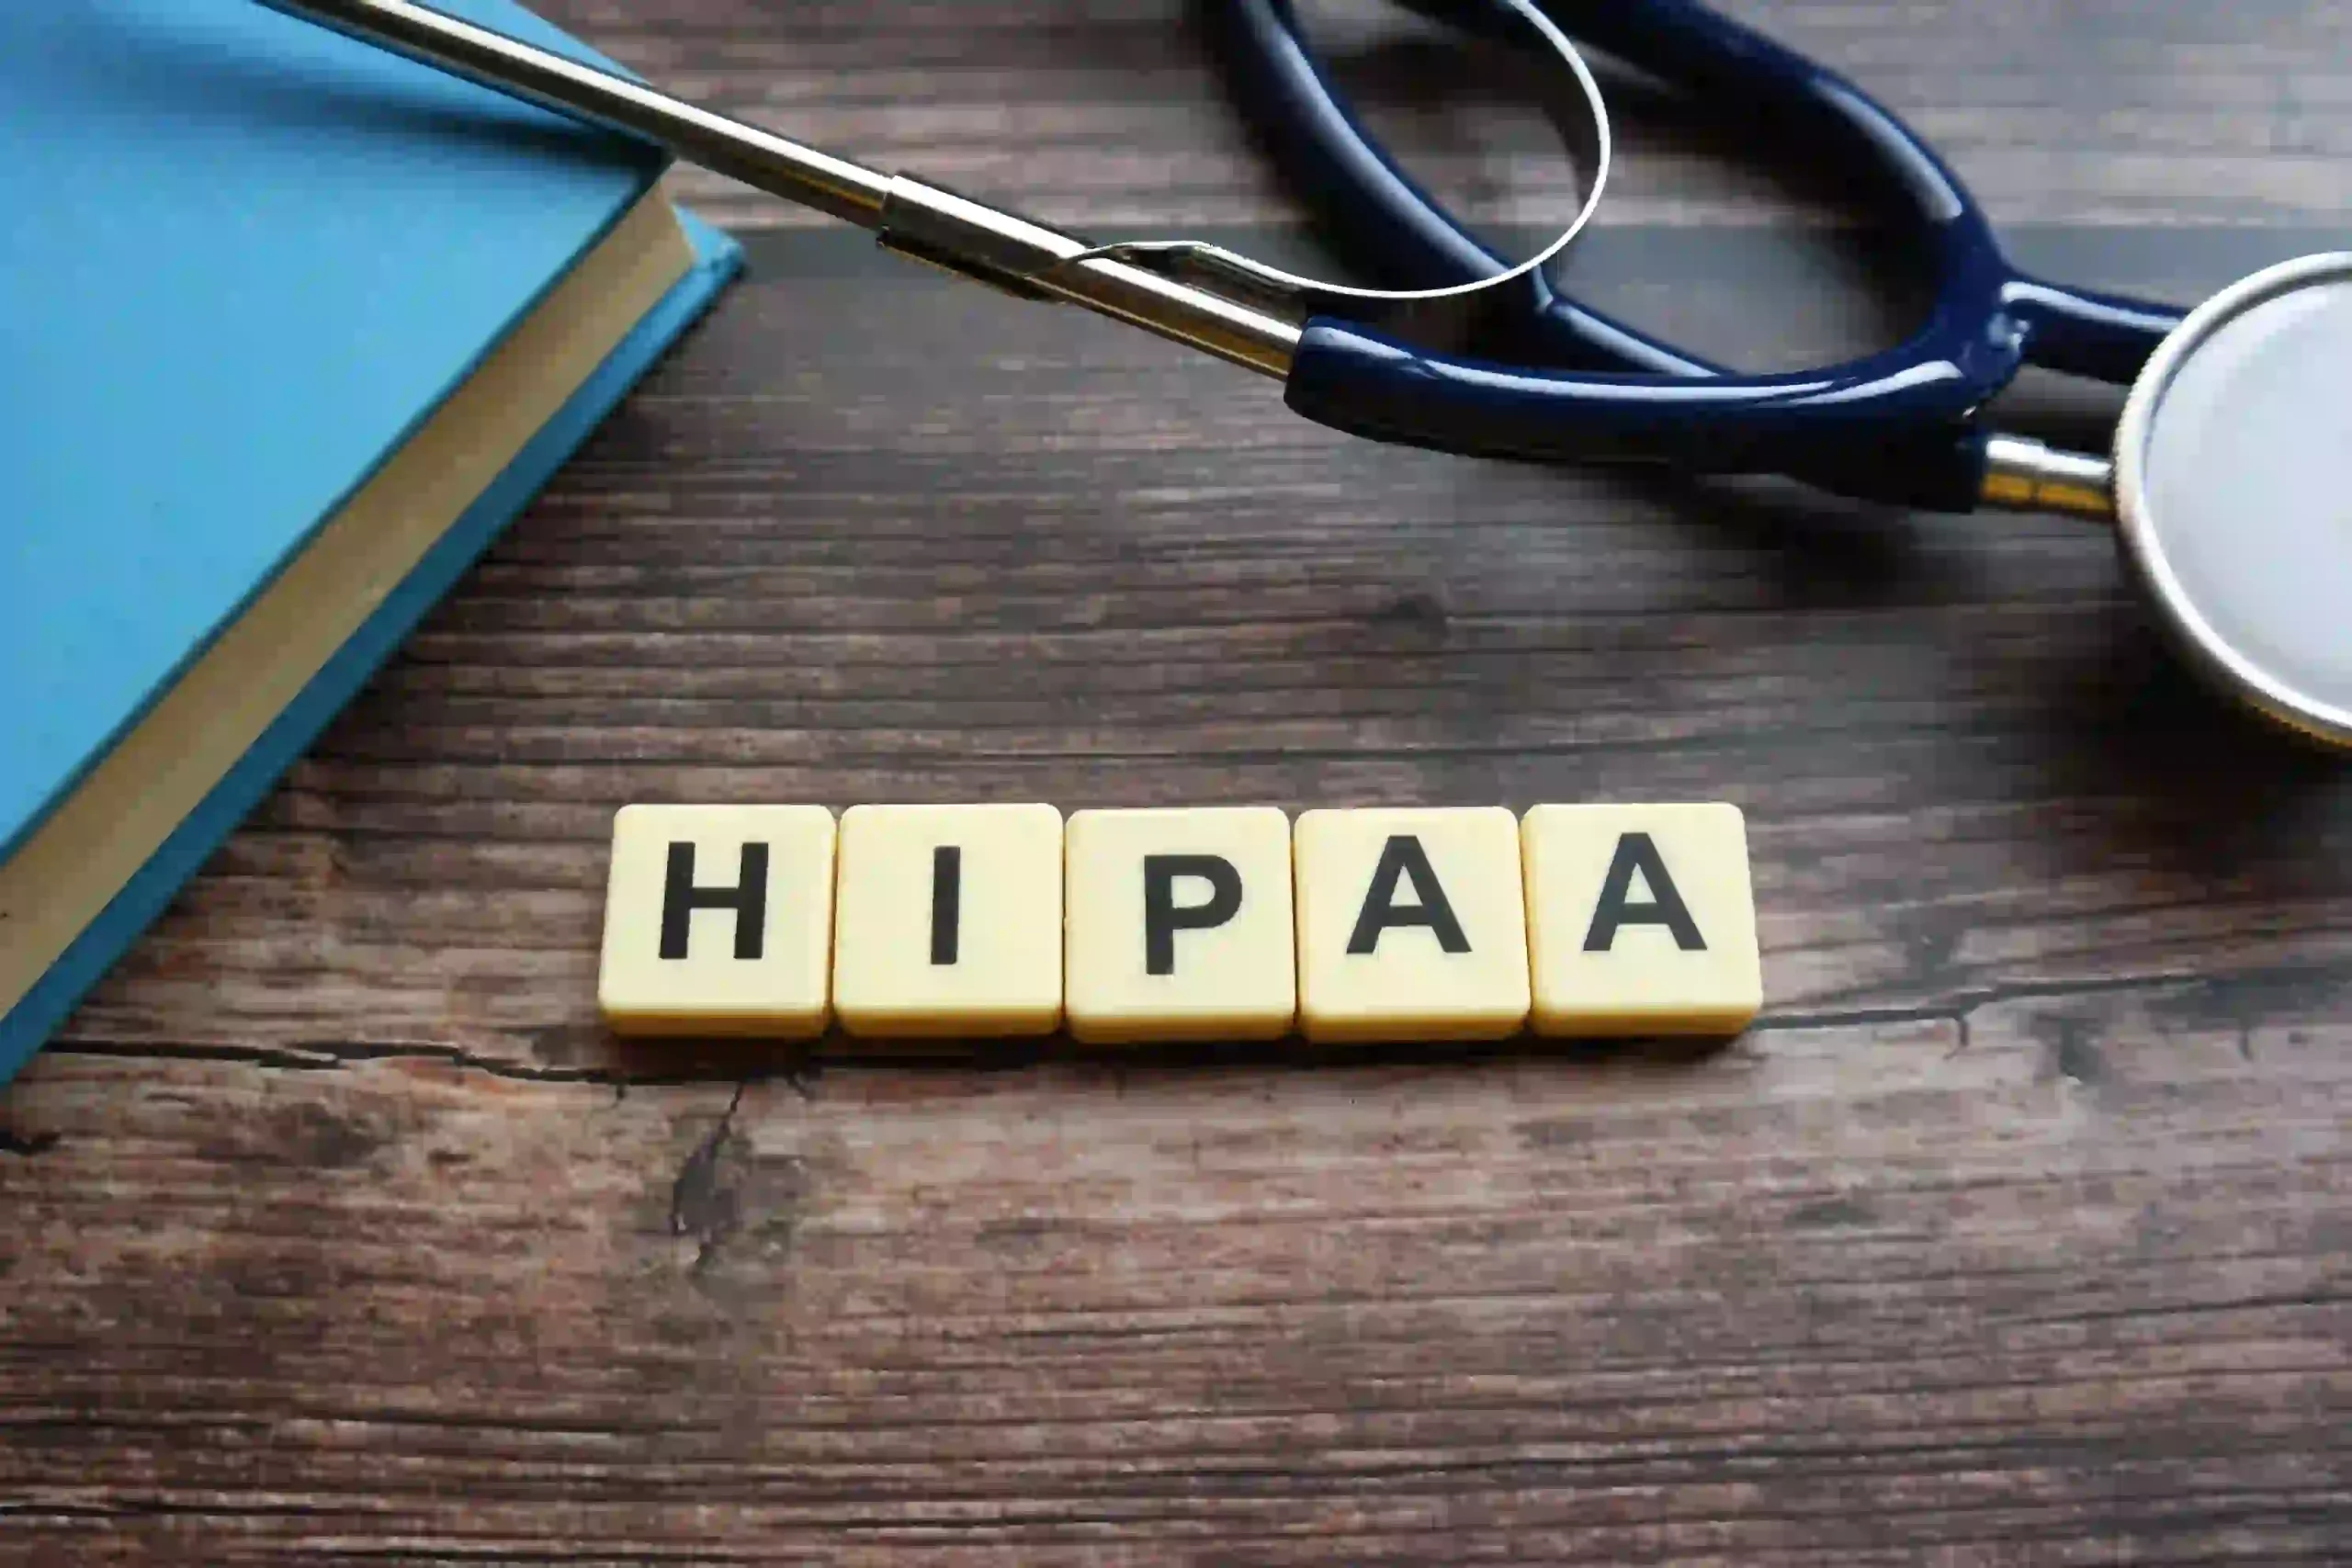 HIPAA sign